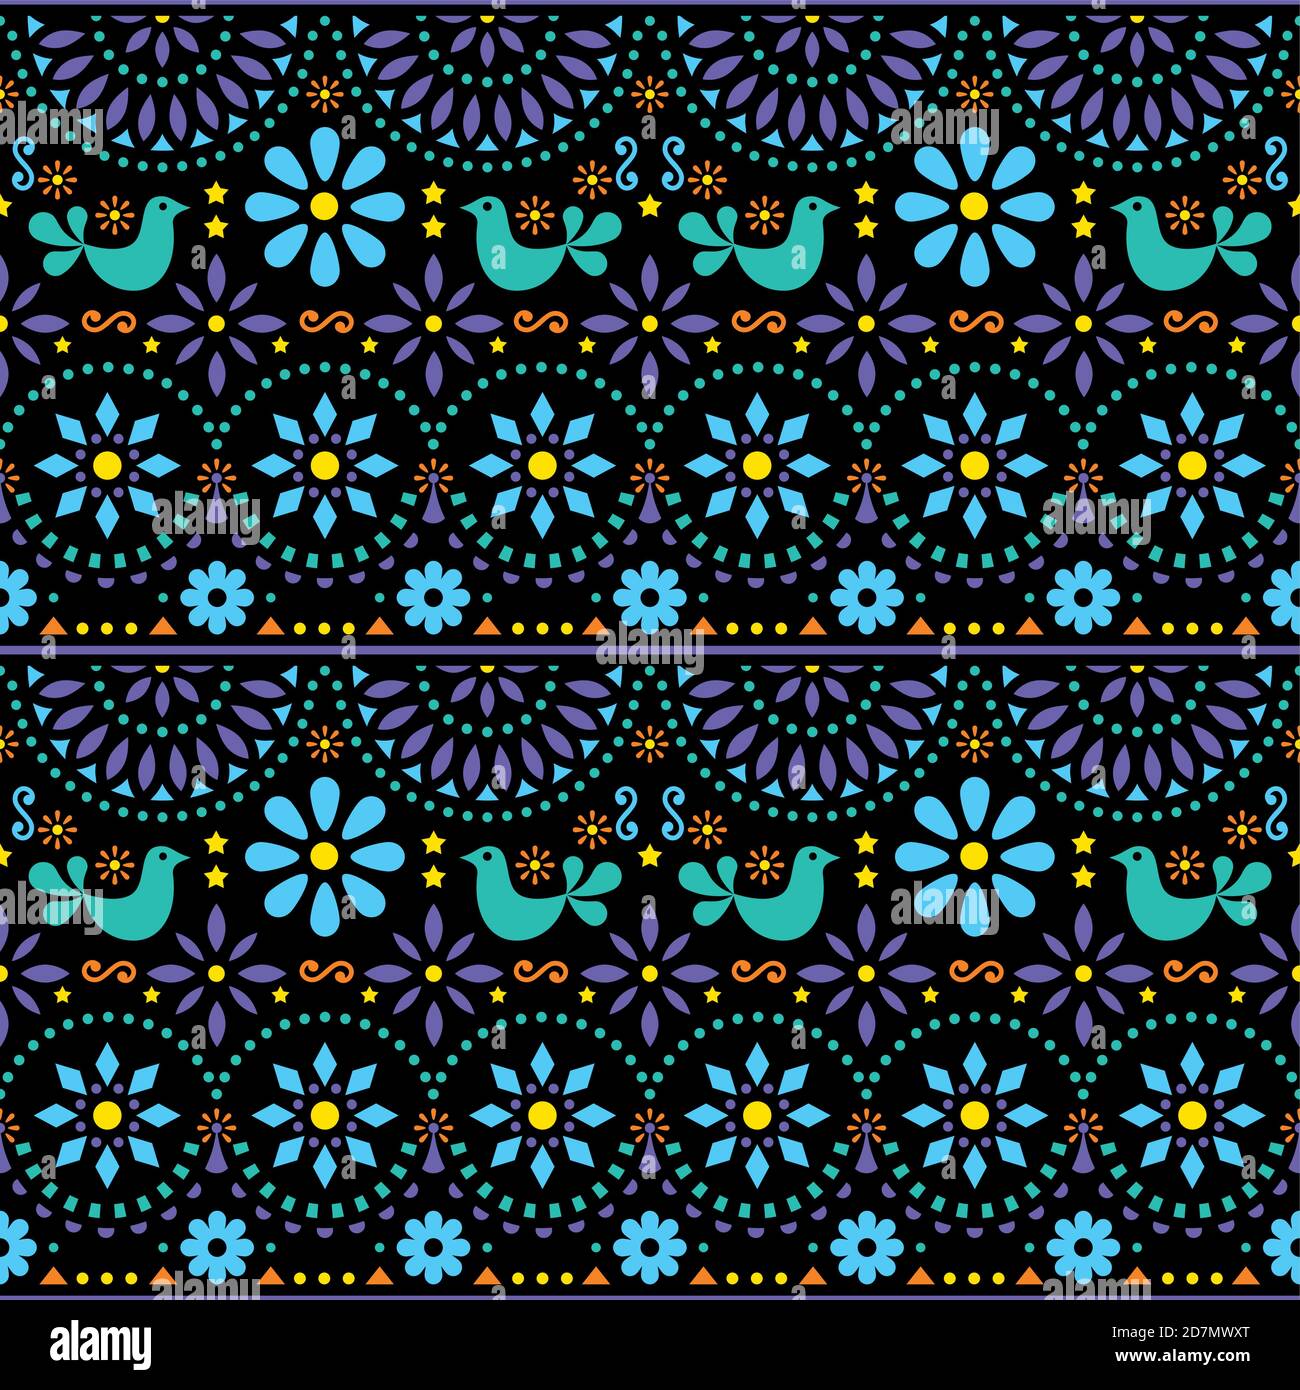 Mexikanische Volkskunst Vektor nahtlose geometrische Muster mit Blumen, Fiesta-Design von der traditionellen Kunst aus Mexiko in grün und blau auf schwarzem Rücken inspiriert Stock Vektor